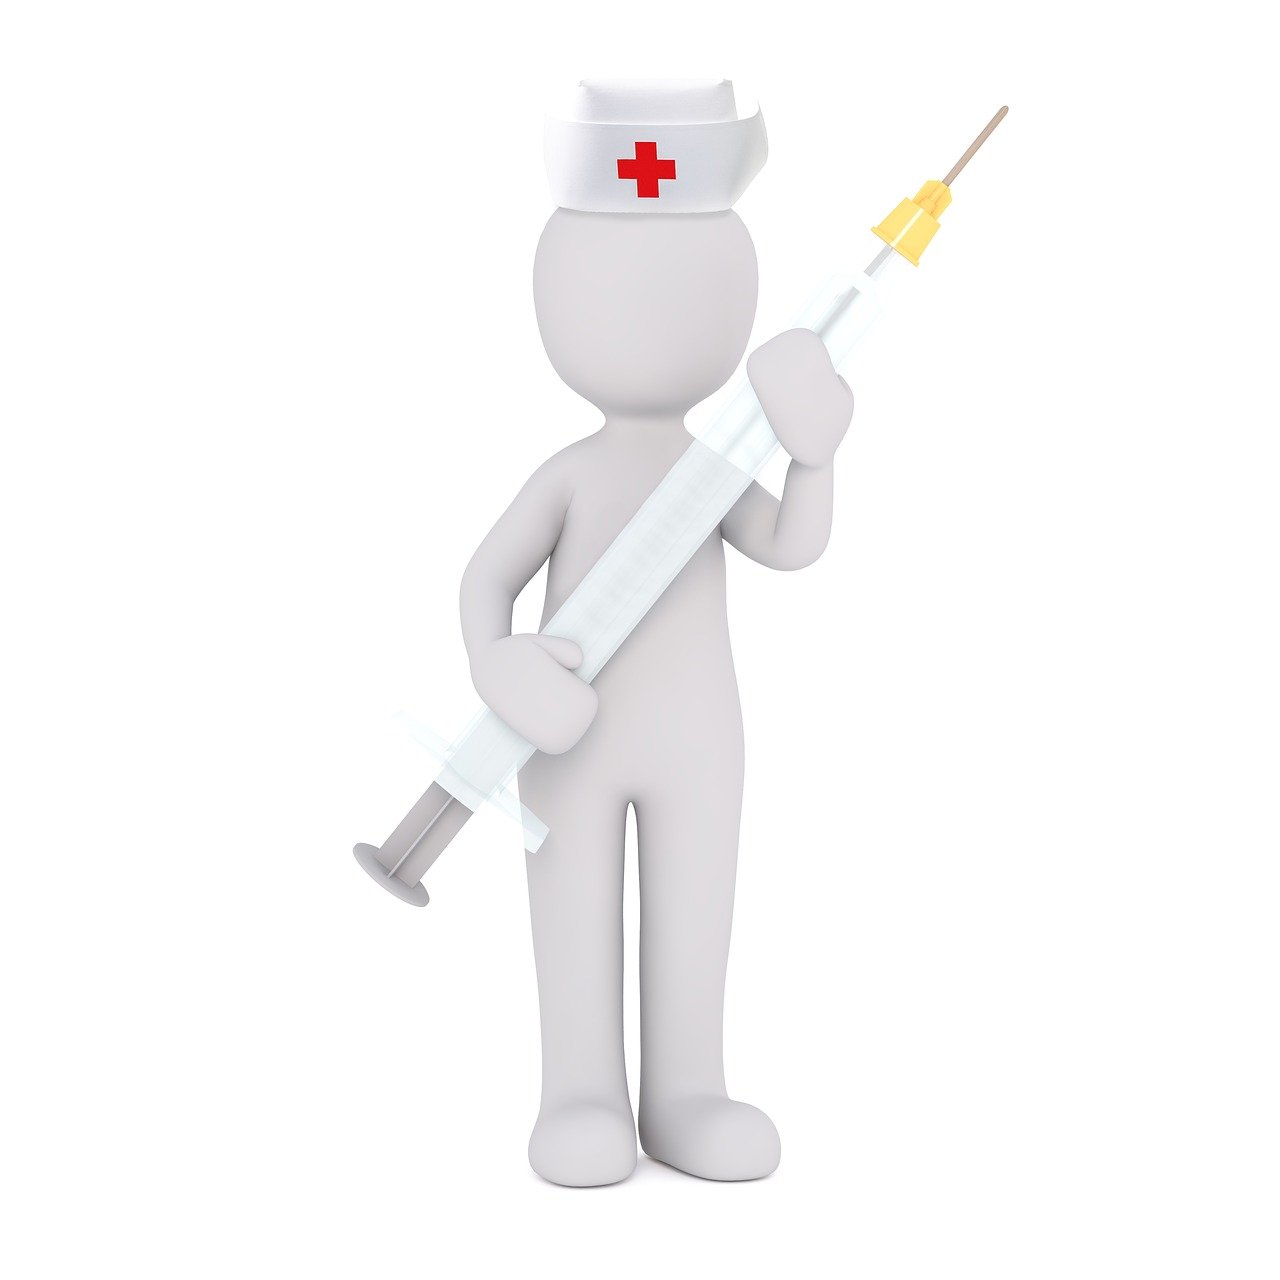 Krankenschwester-Figur - Quelle: Pixabay